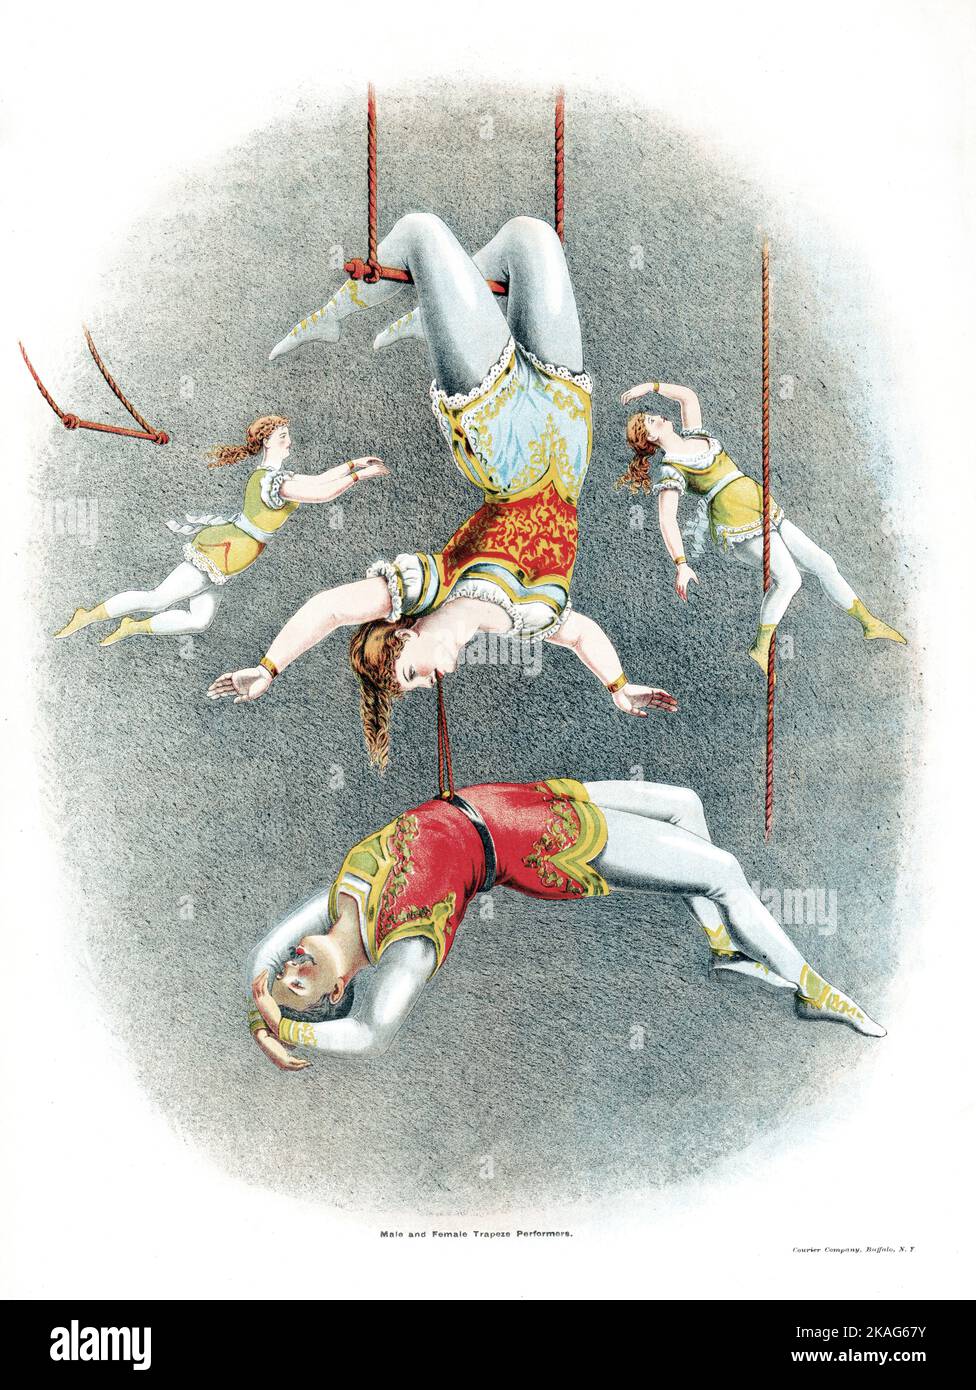 Vintage Circus Poster - männliche und weibliche Trapezkünstler - 1875 - Aerialisten - Zirkuskünstler Stockfoto